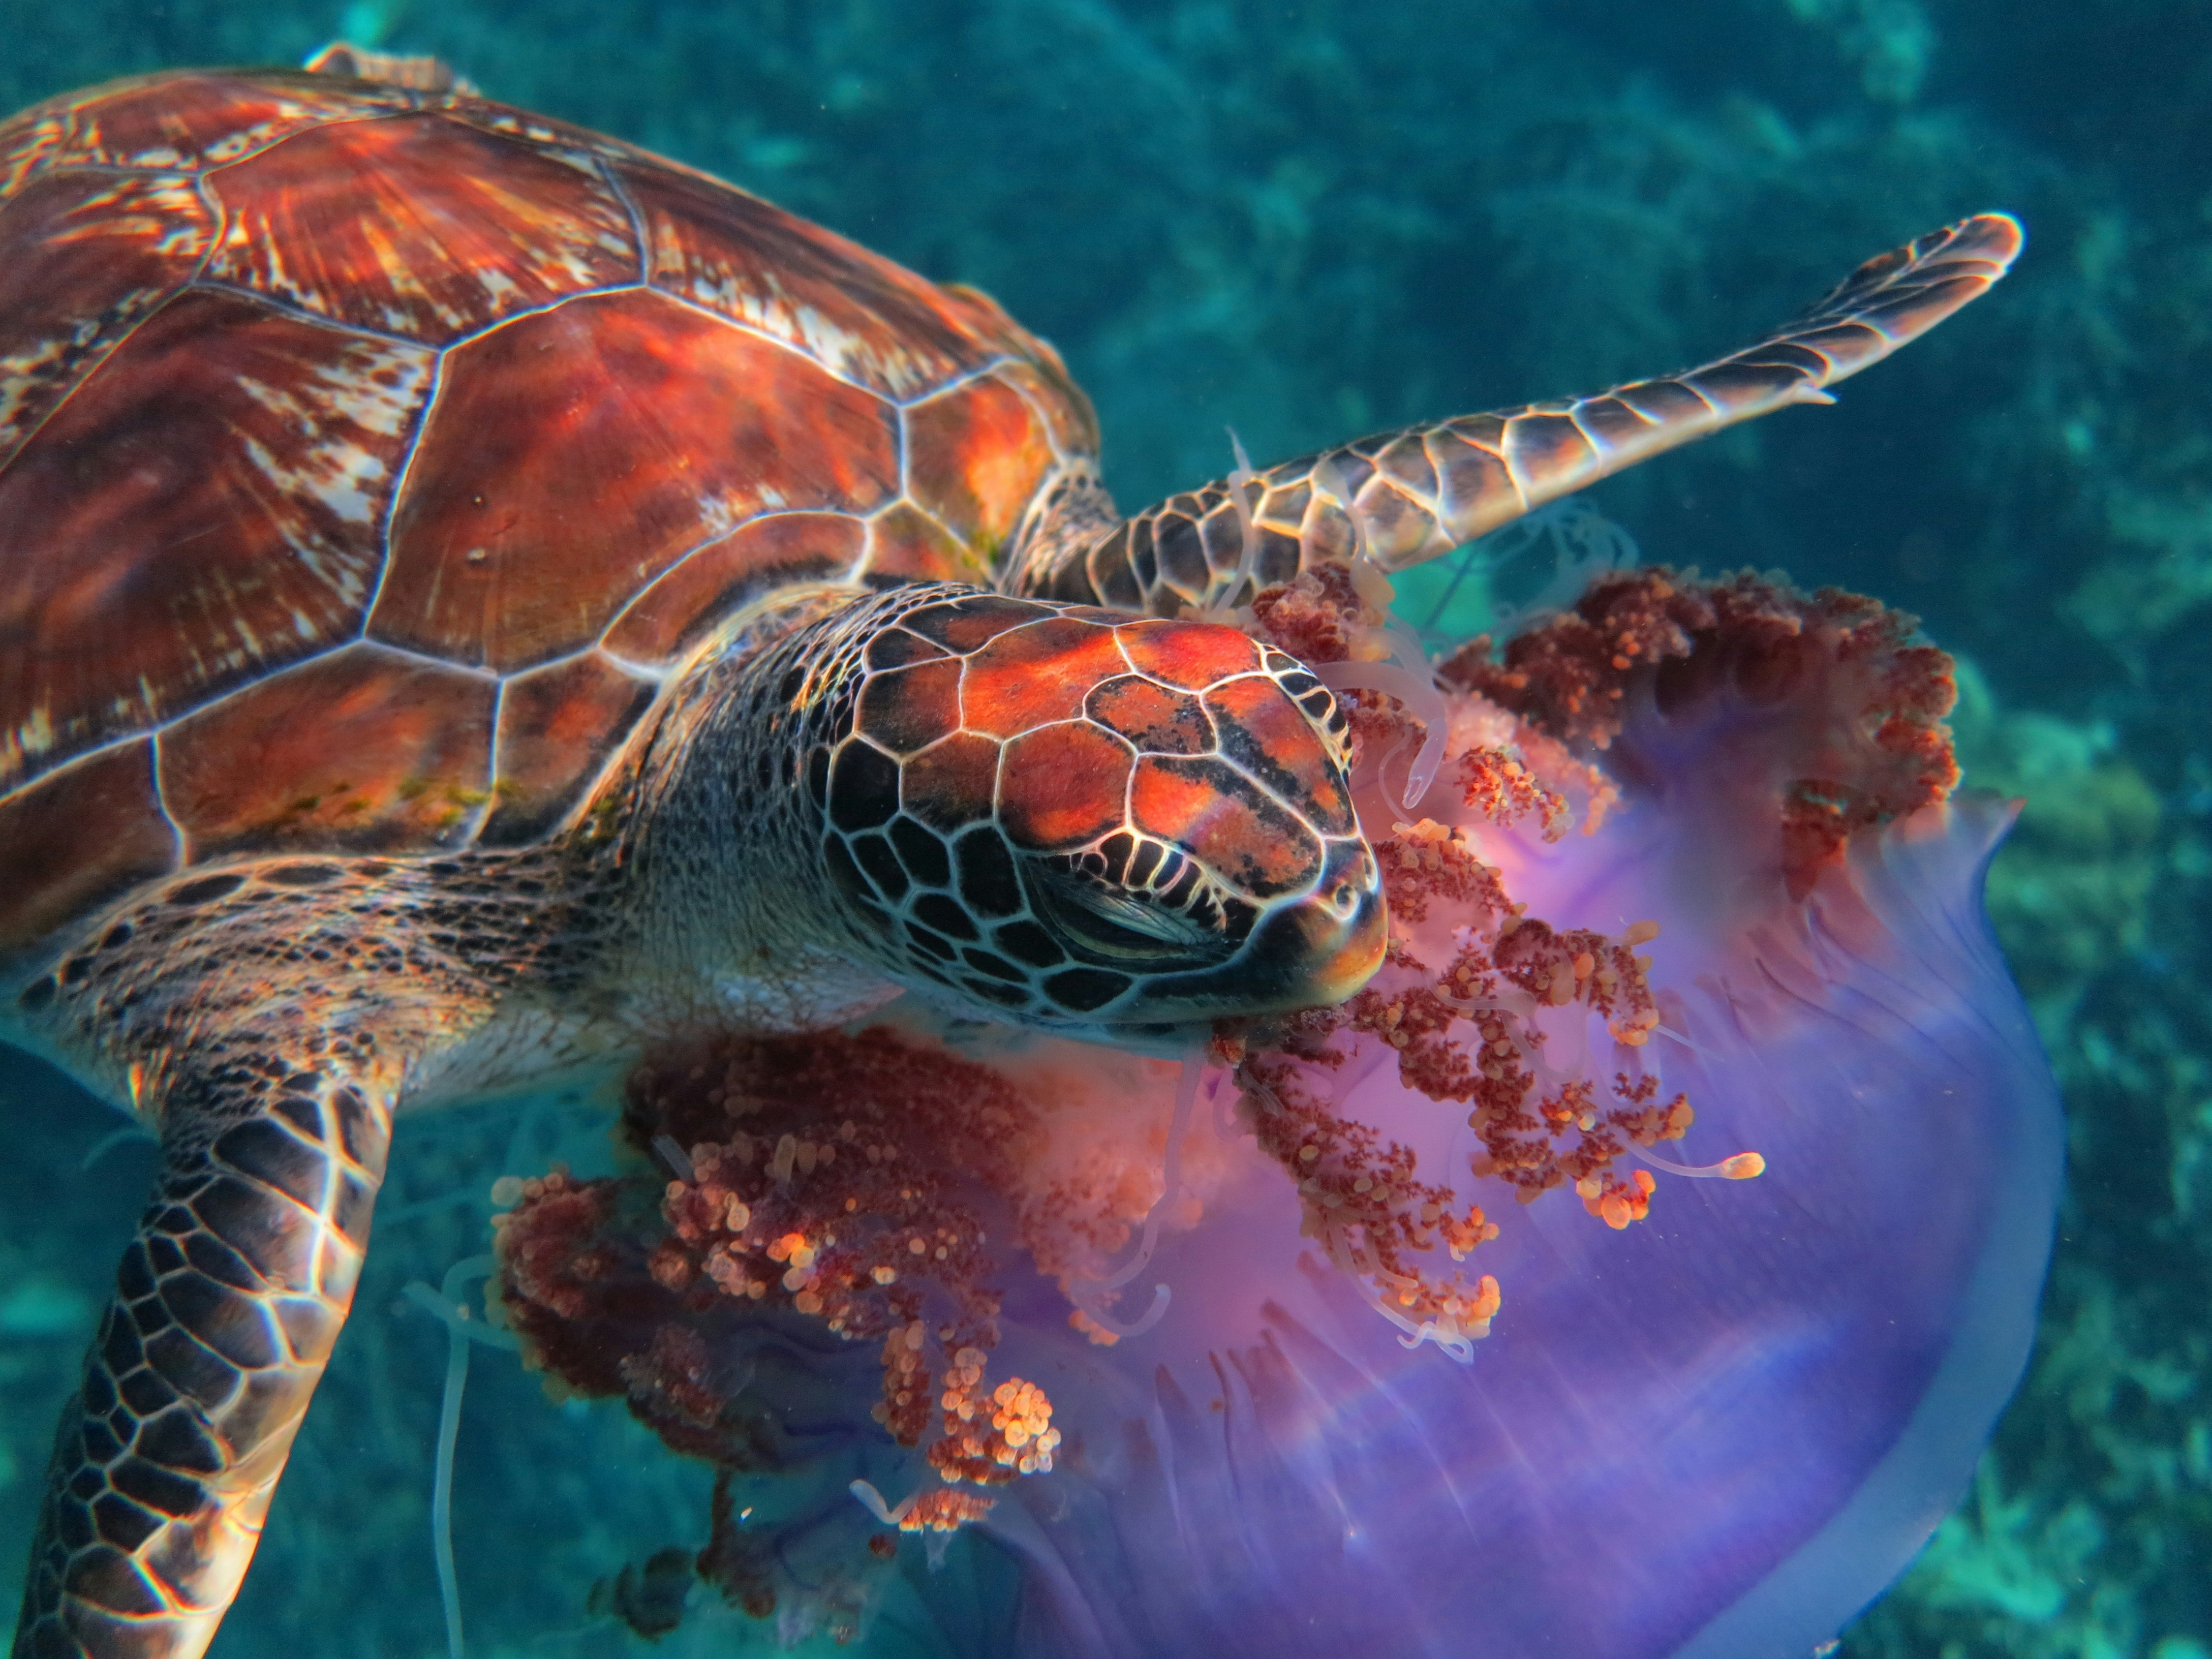 Le tartarughe sono il principale predatore delle meduse.